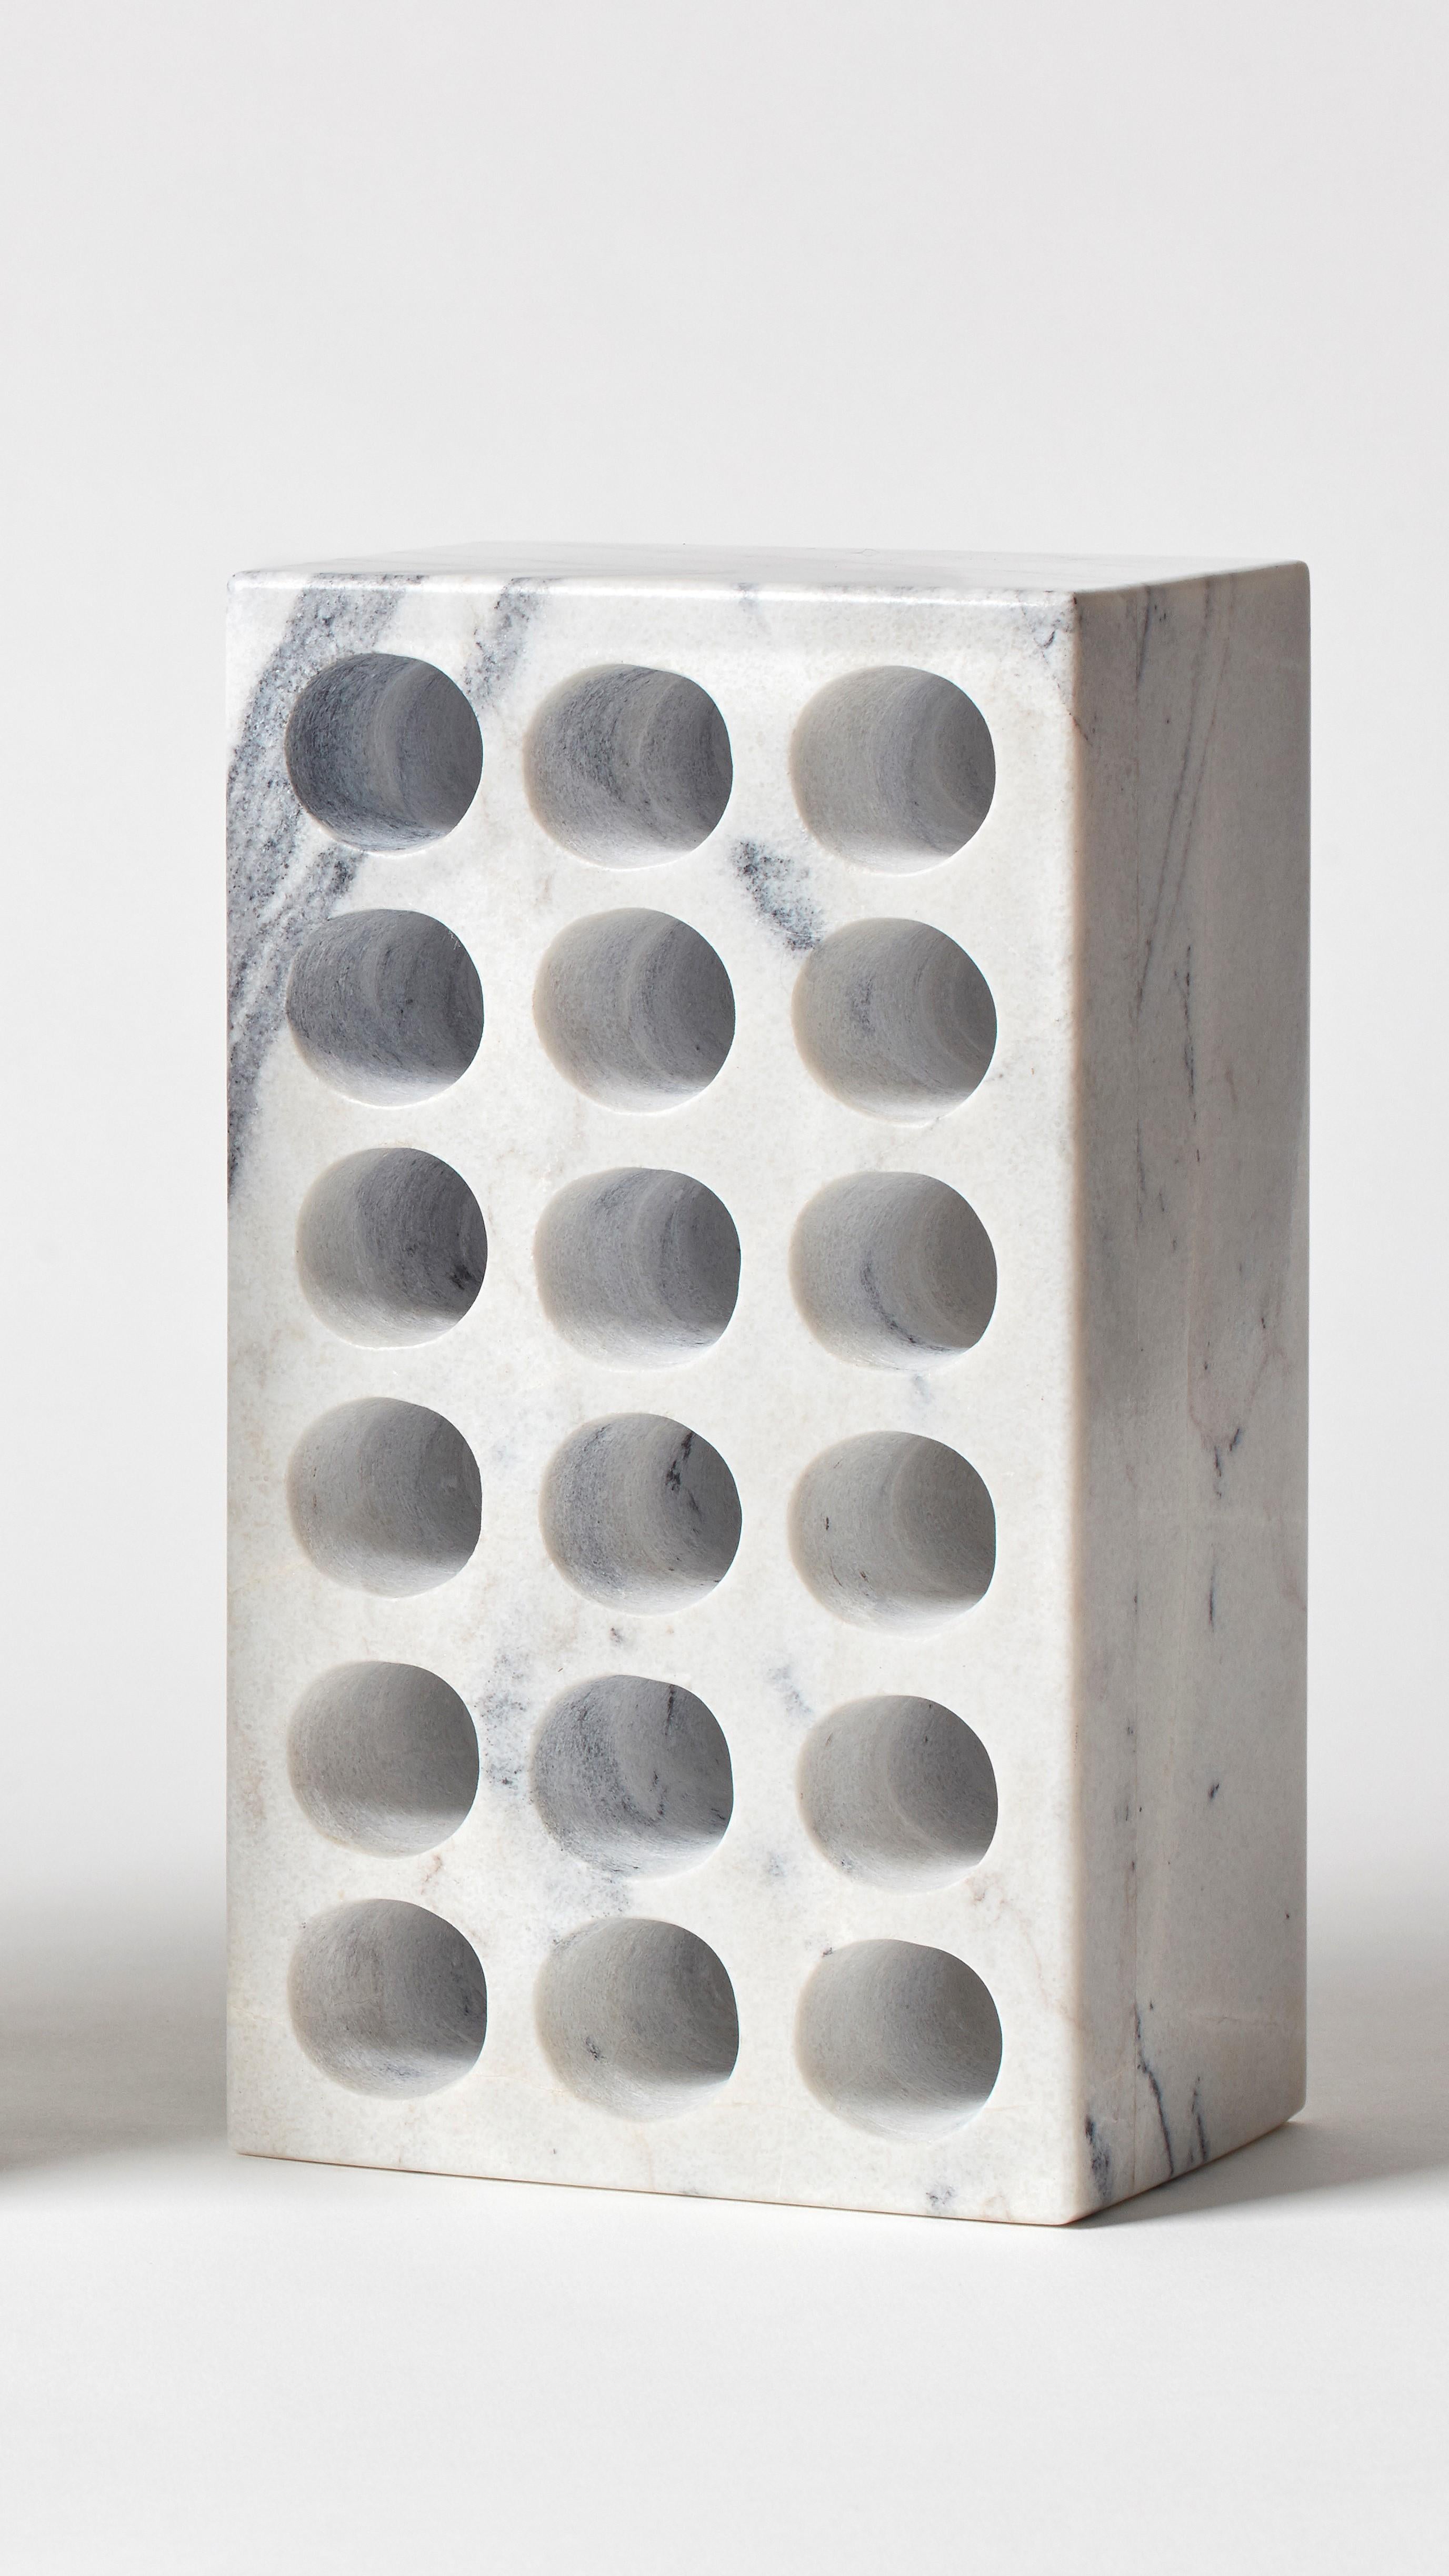 Brique par Estudio Rafael Freyre
Dimensions : L 12,5 D 9 x H 23 cm 
Matériaux : Pierres des Andes
Également disponible : autres finitions disponibles.

La brique est un élément constructif générique qui fait partie de l'imaginaire urbain. Au Pérou,